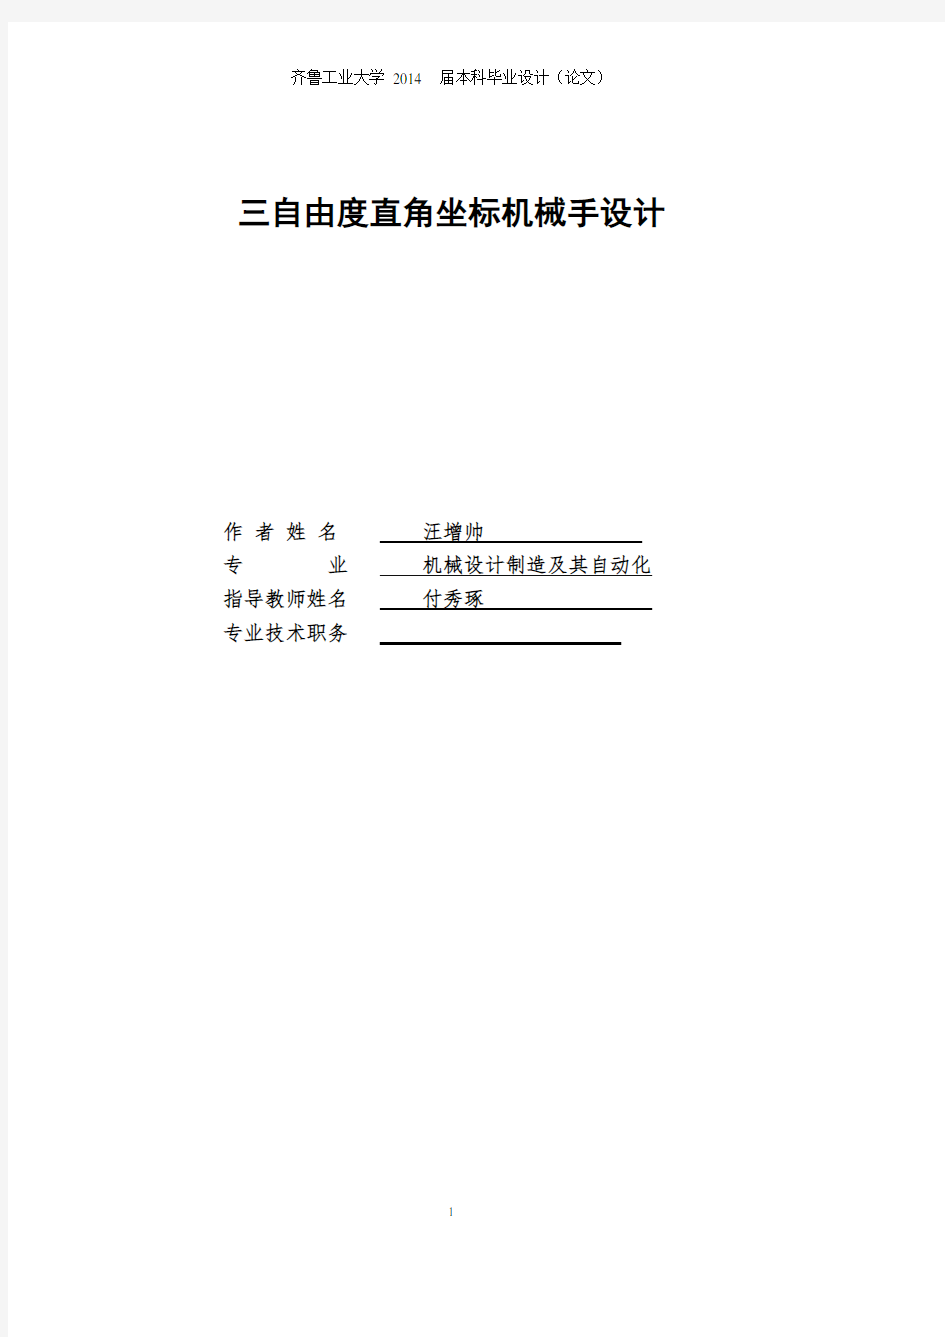 机械手说明书(2020年10月整理).pdf